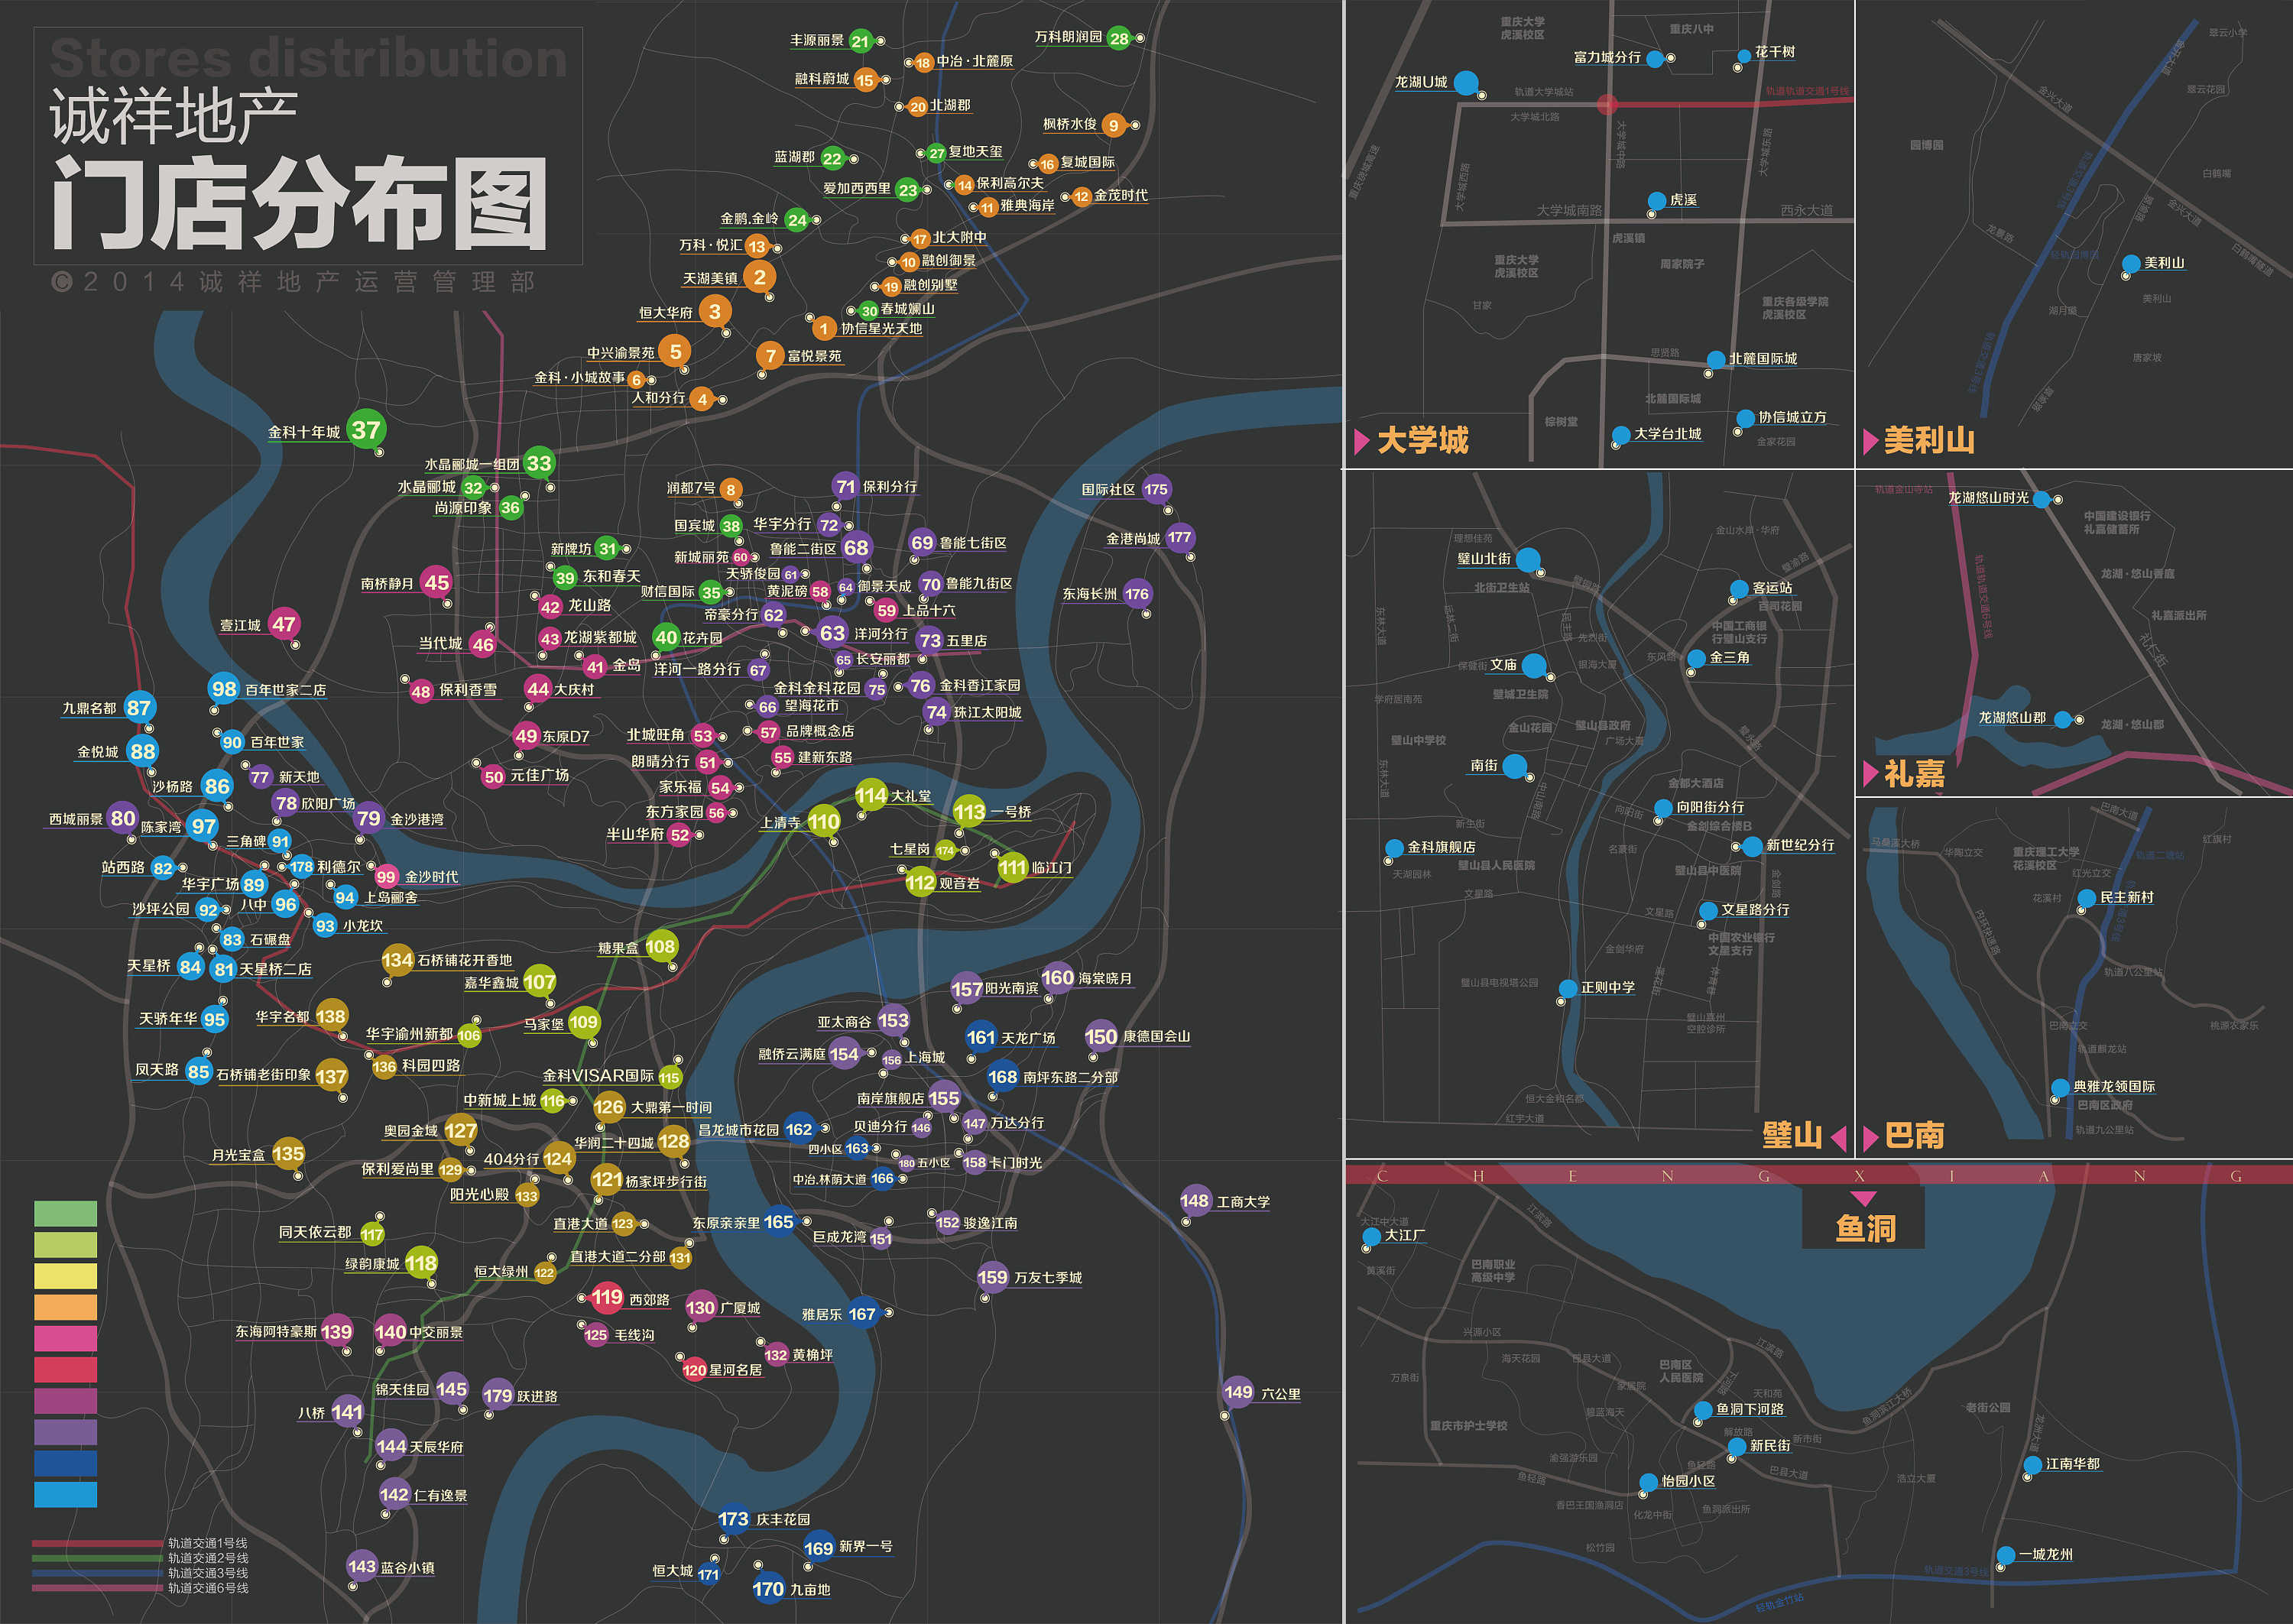 重庆诚祥地产门店分布地图绘制